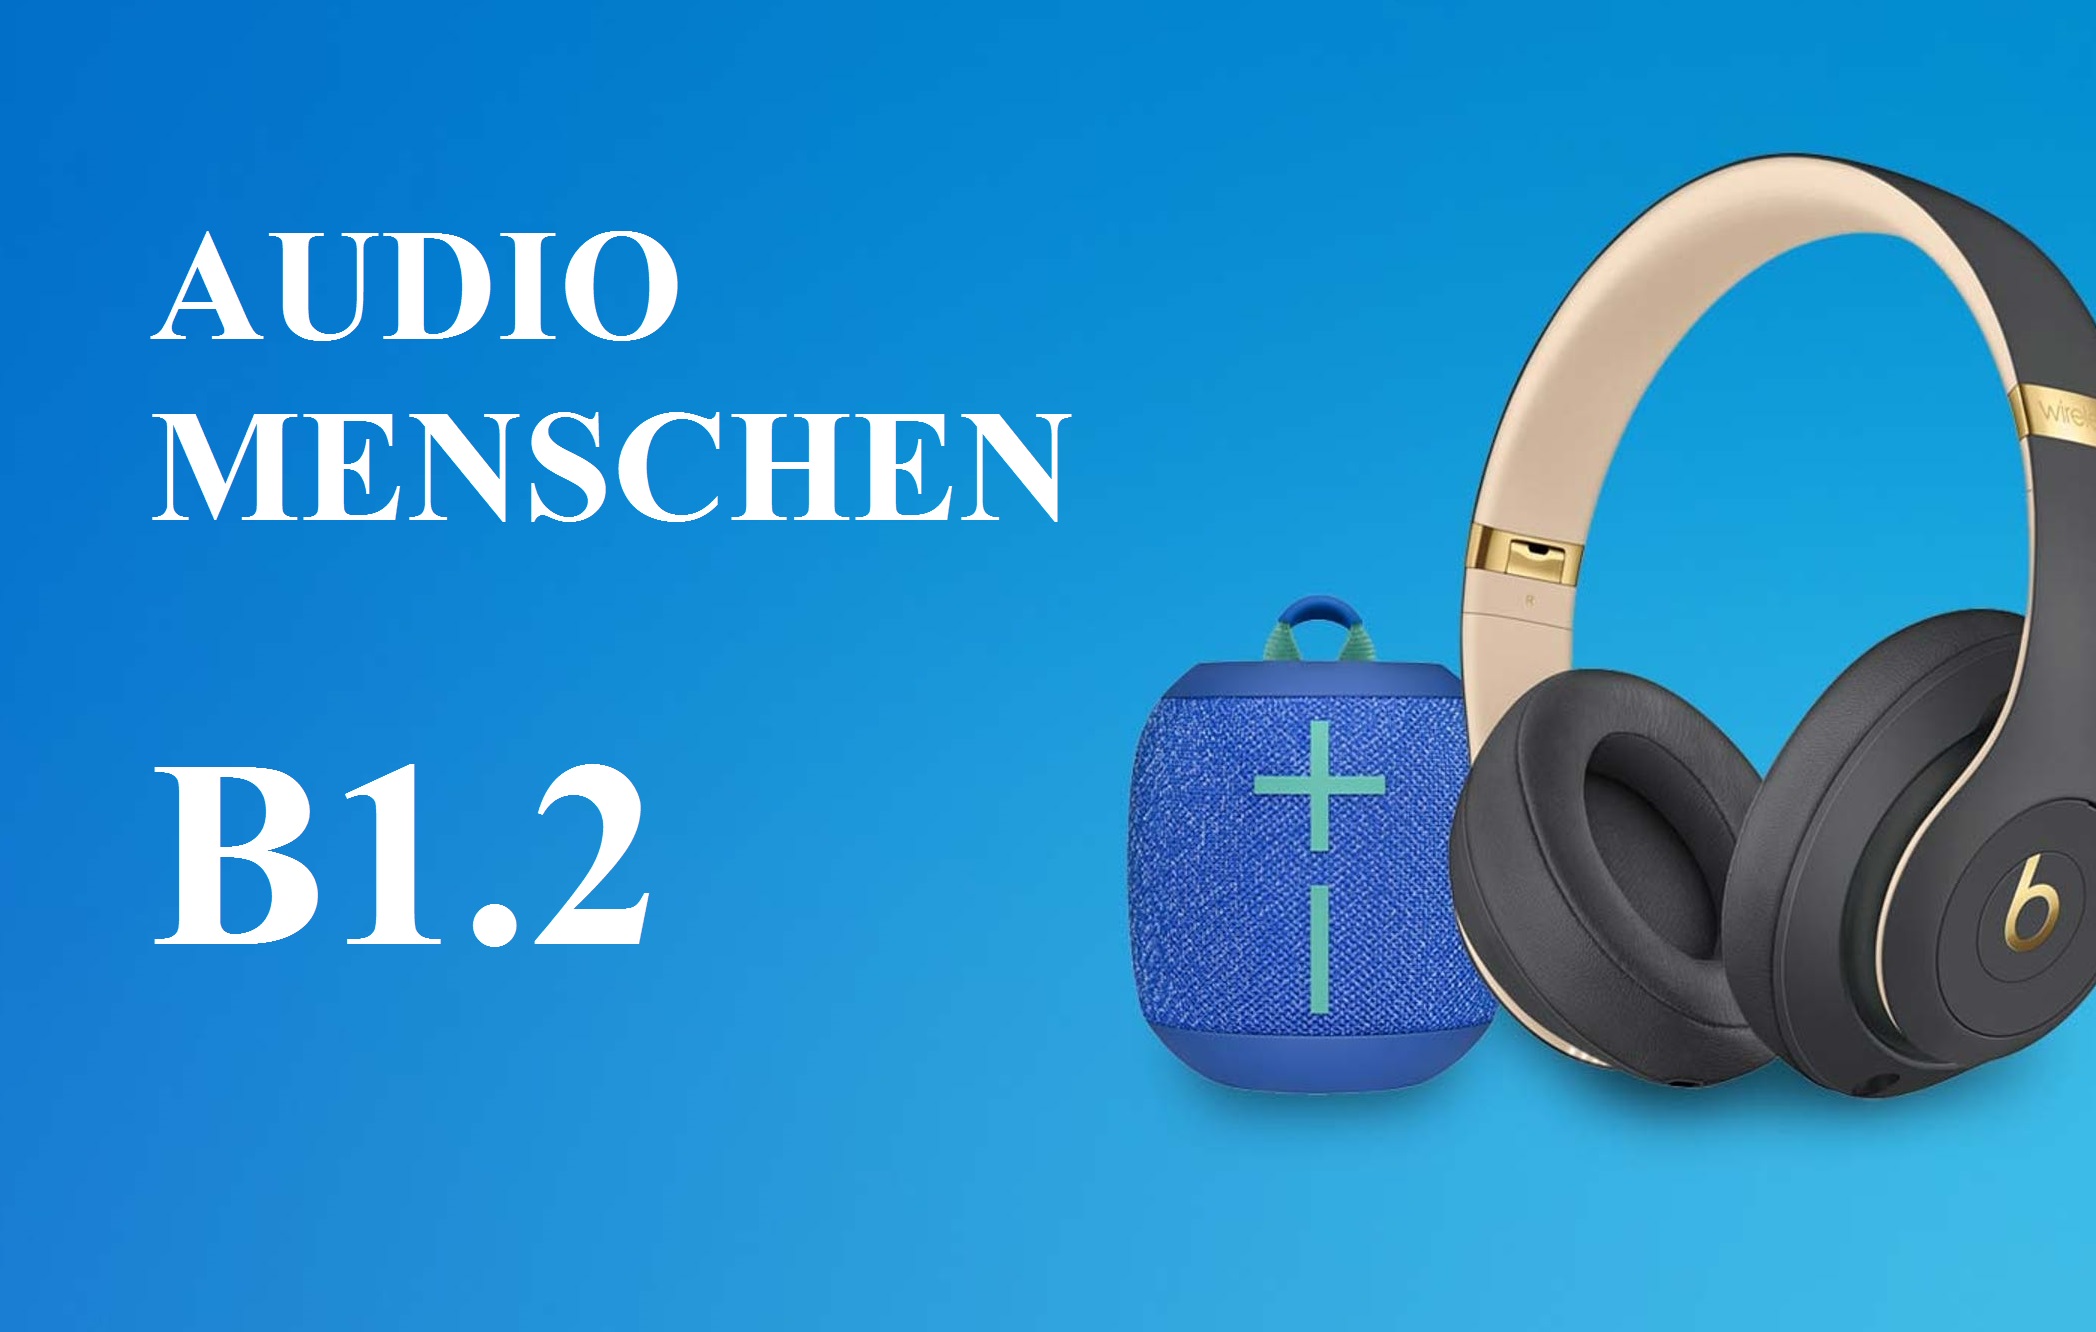 Tổng hợp Audio giáo trình học tiếng Đức Menschen đầy đủ (B1.2)